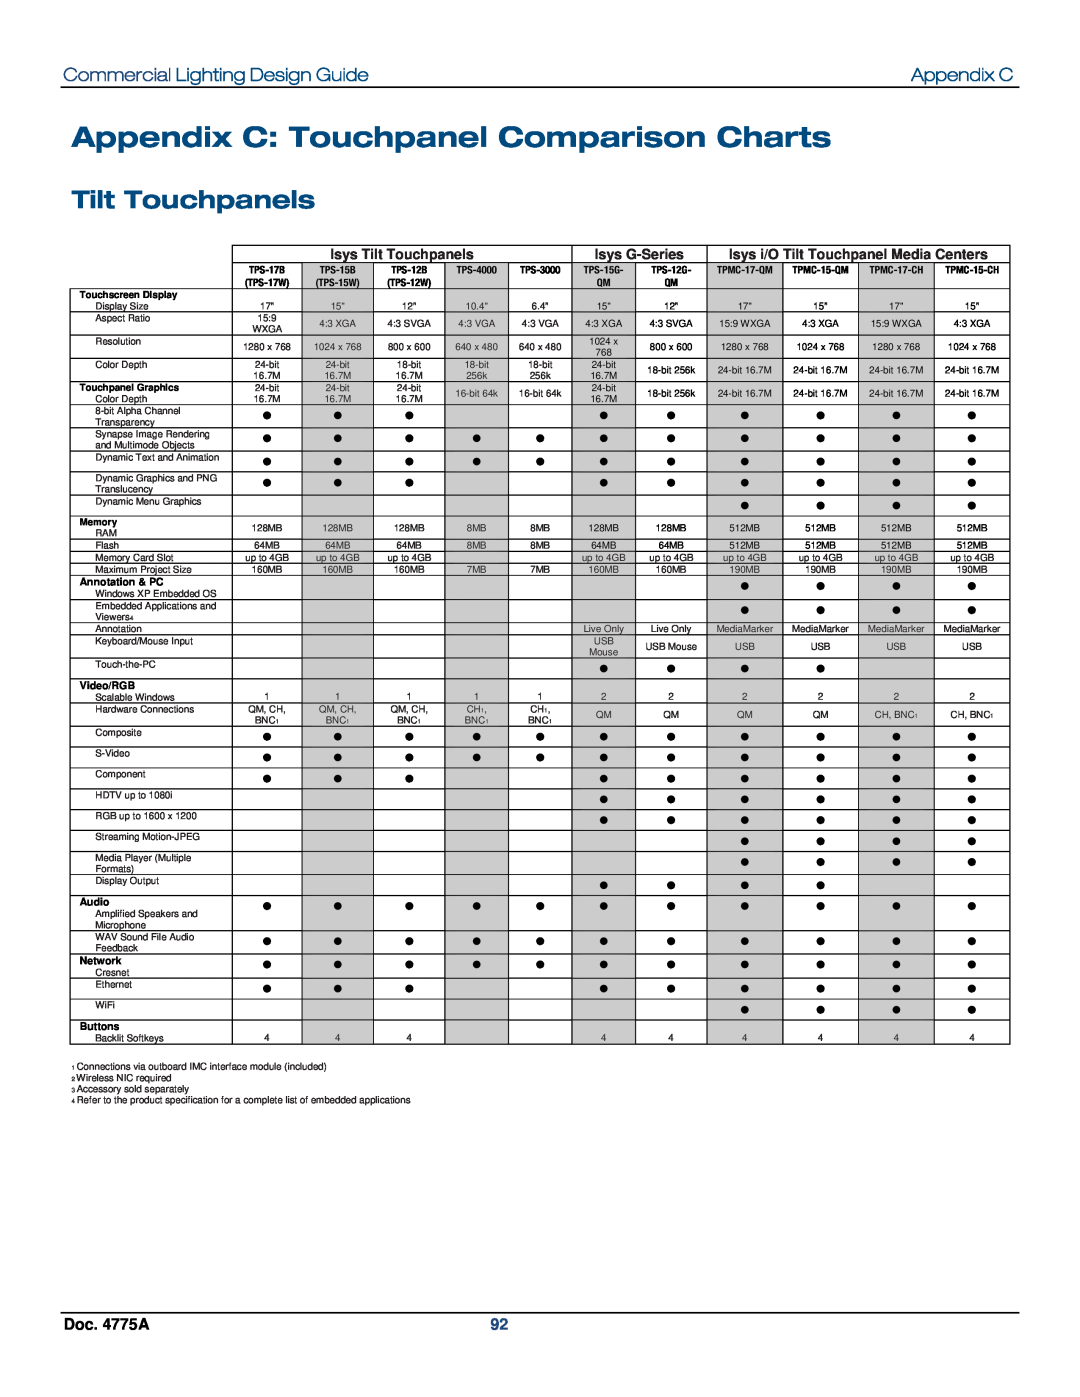 Crestron electronic IPAC-GL1 Appendix C: Touchpanel Comparison Charts, Tilt Touchpanels, Commercial Lighting Design Guide 